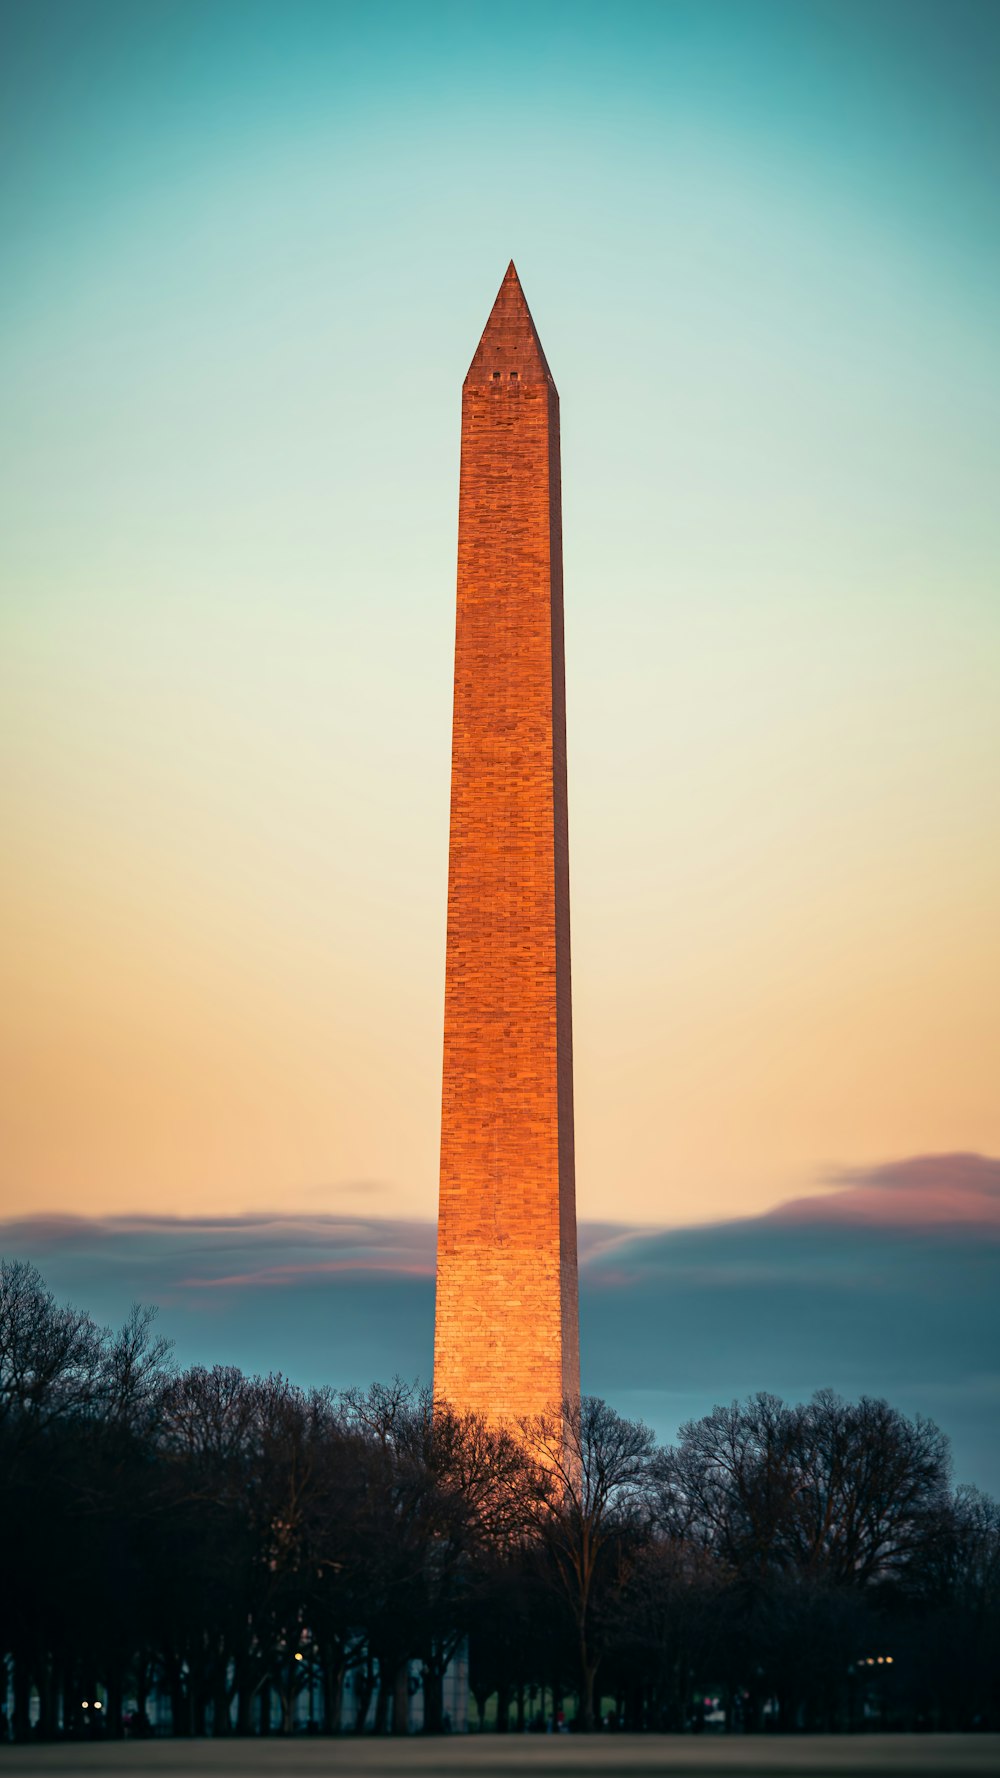 Das Washington Monument bei Sonnenuntergang mit Bäumen im Vordergrund